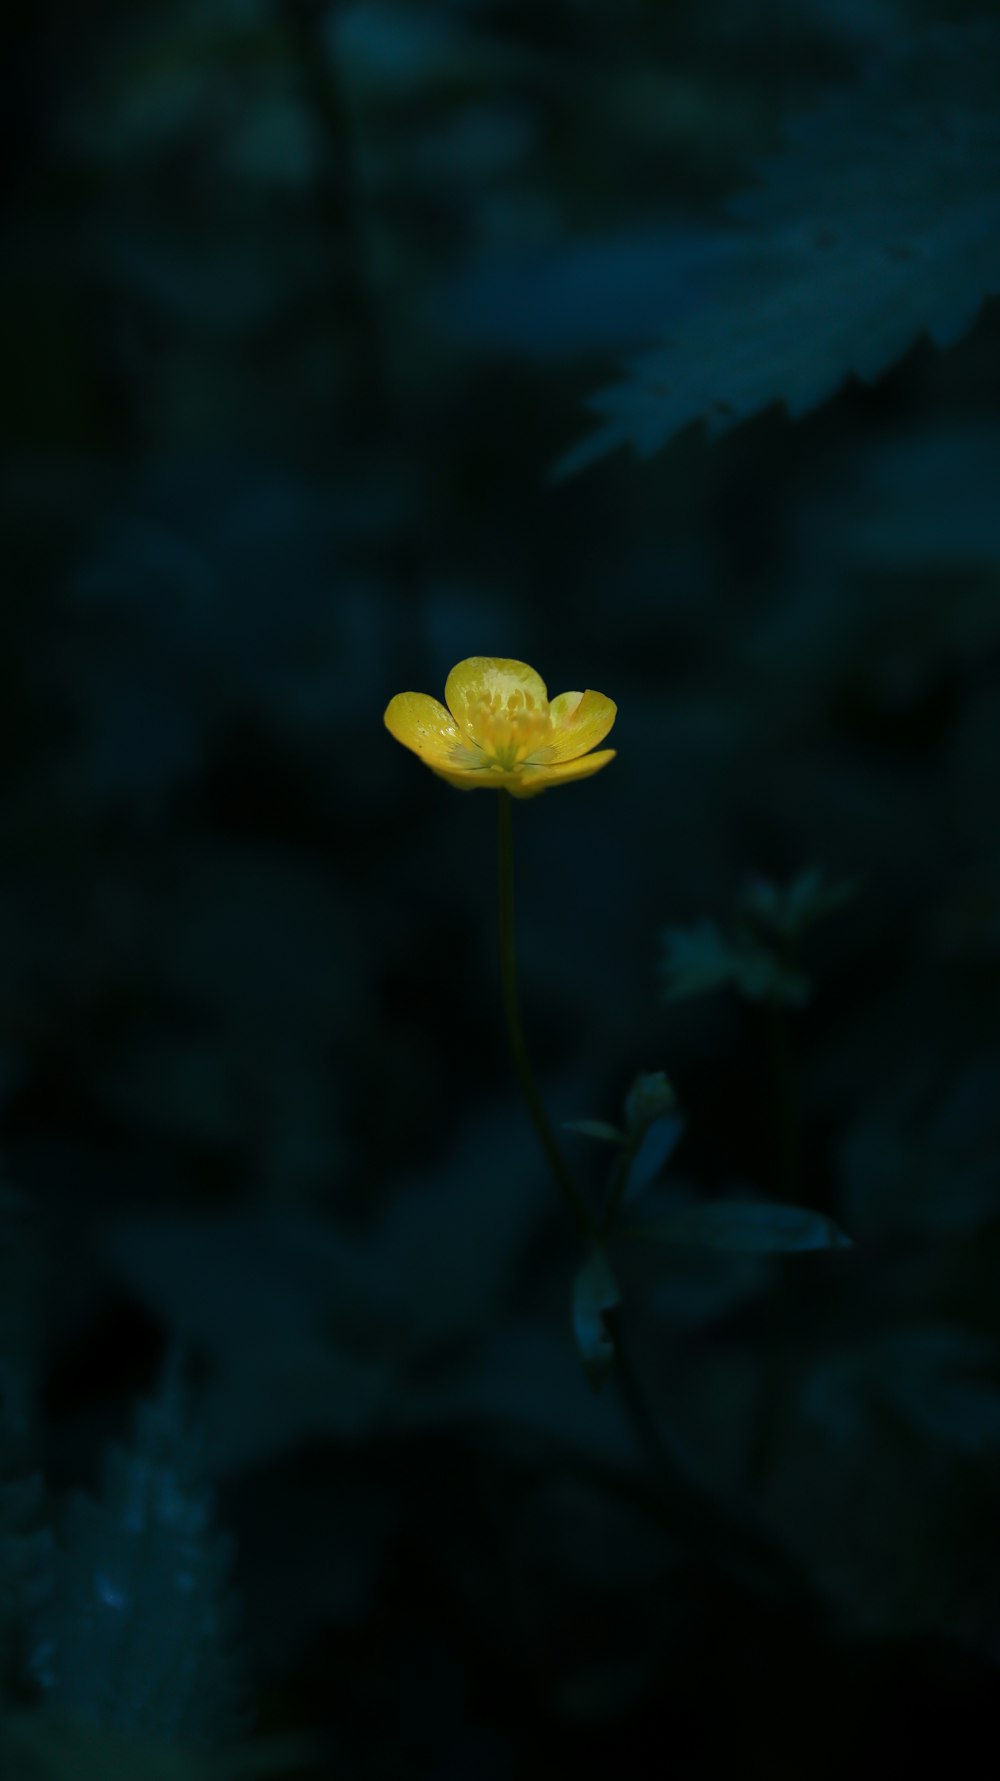 暗闇に咲く一輪の黄色い花